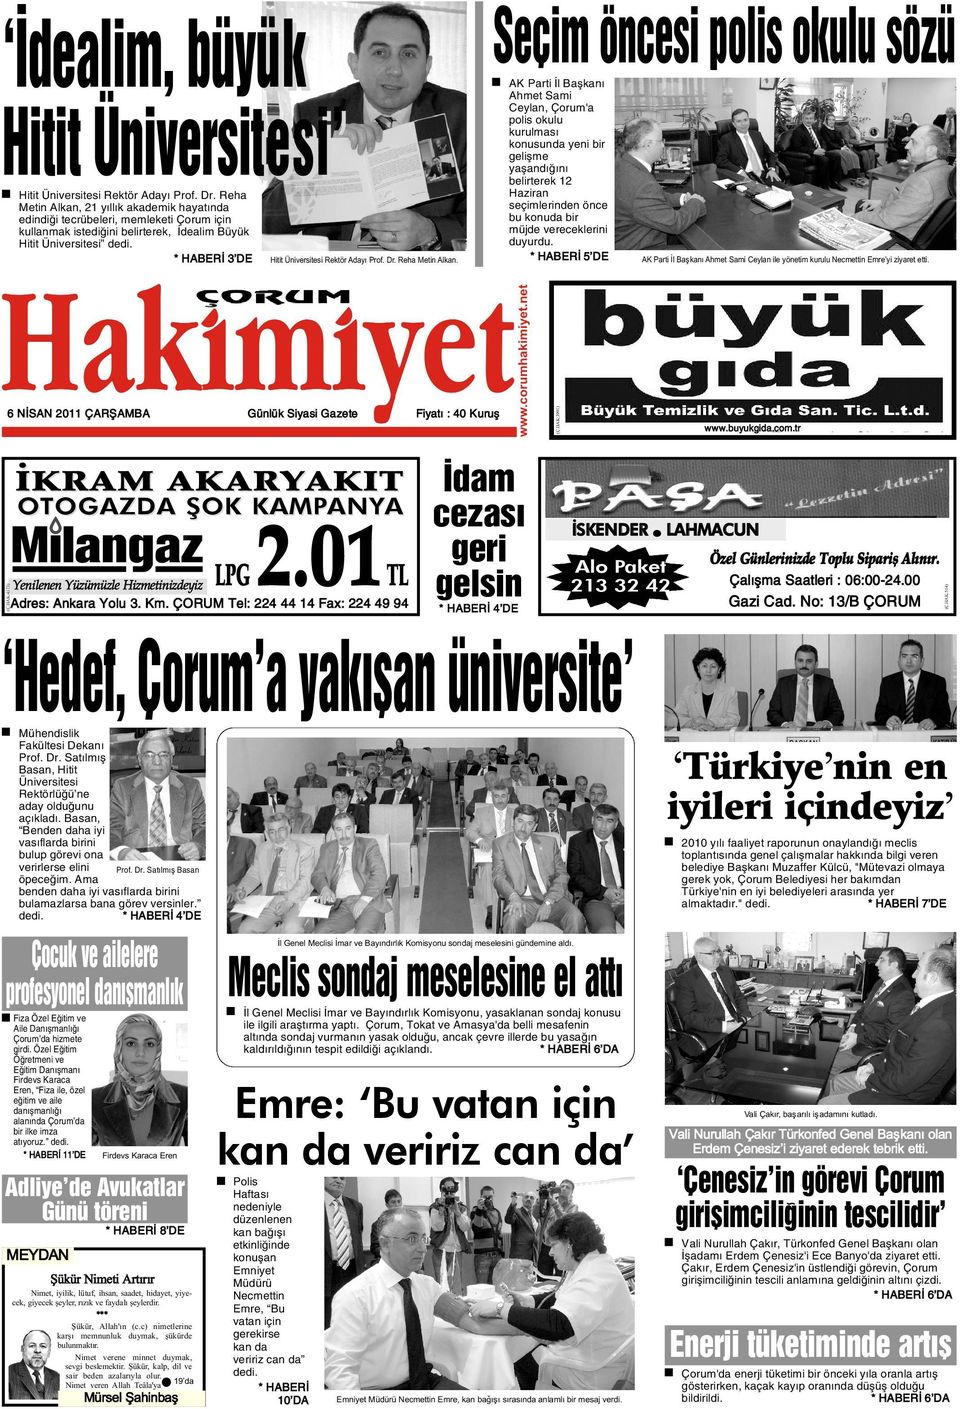 Günlük Siyasi Gazete Fiyatý : 40 Kuruþ Ýdam cezasý geri TL gelsin Yenilenen Yüzümüzle Hizmetinizdeyiz LPG Adres: Ankara Yolu 3. Km.